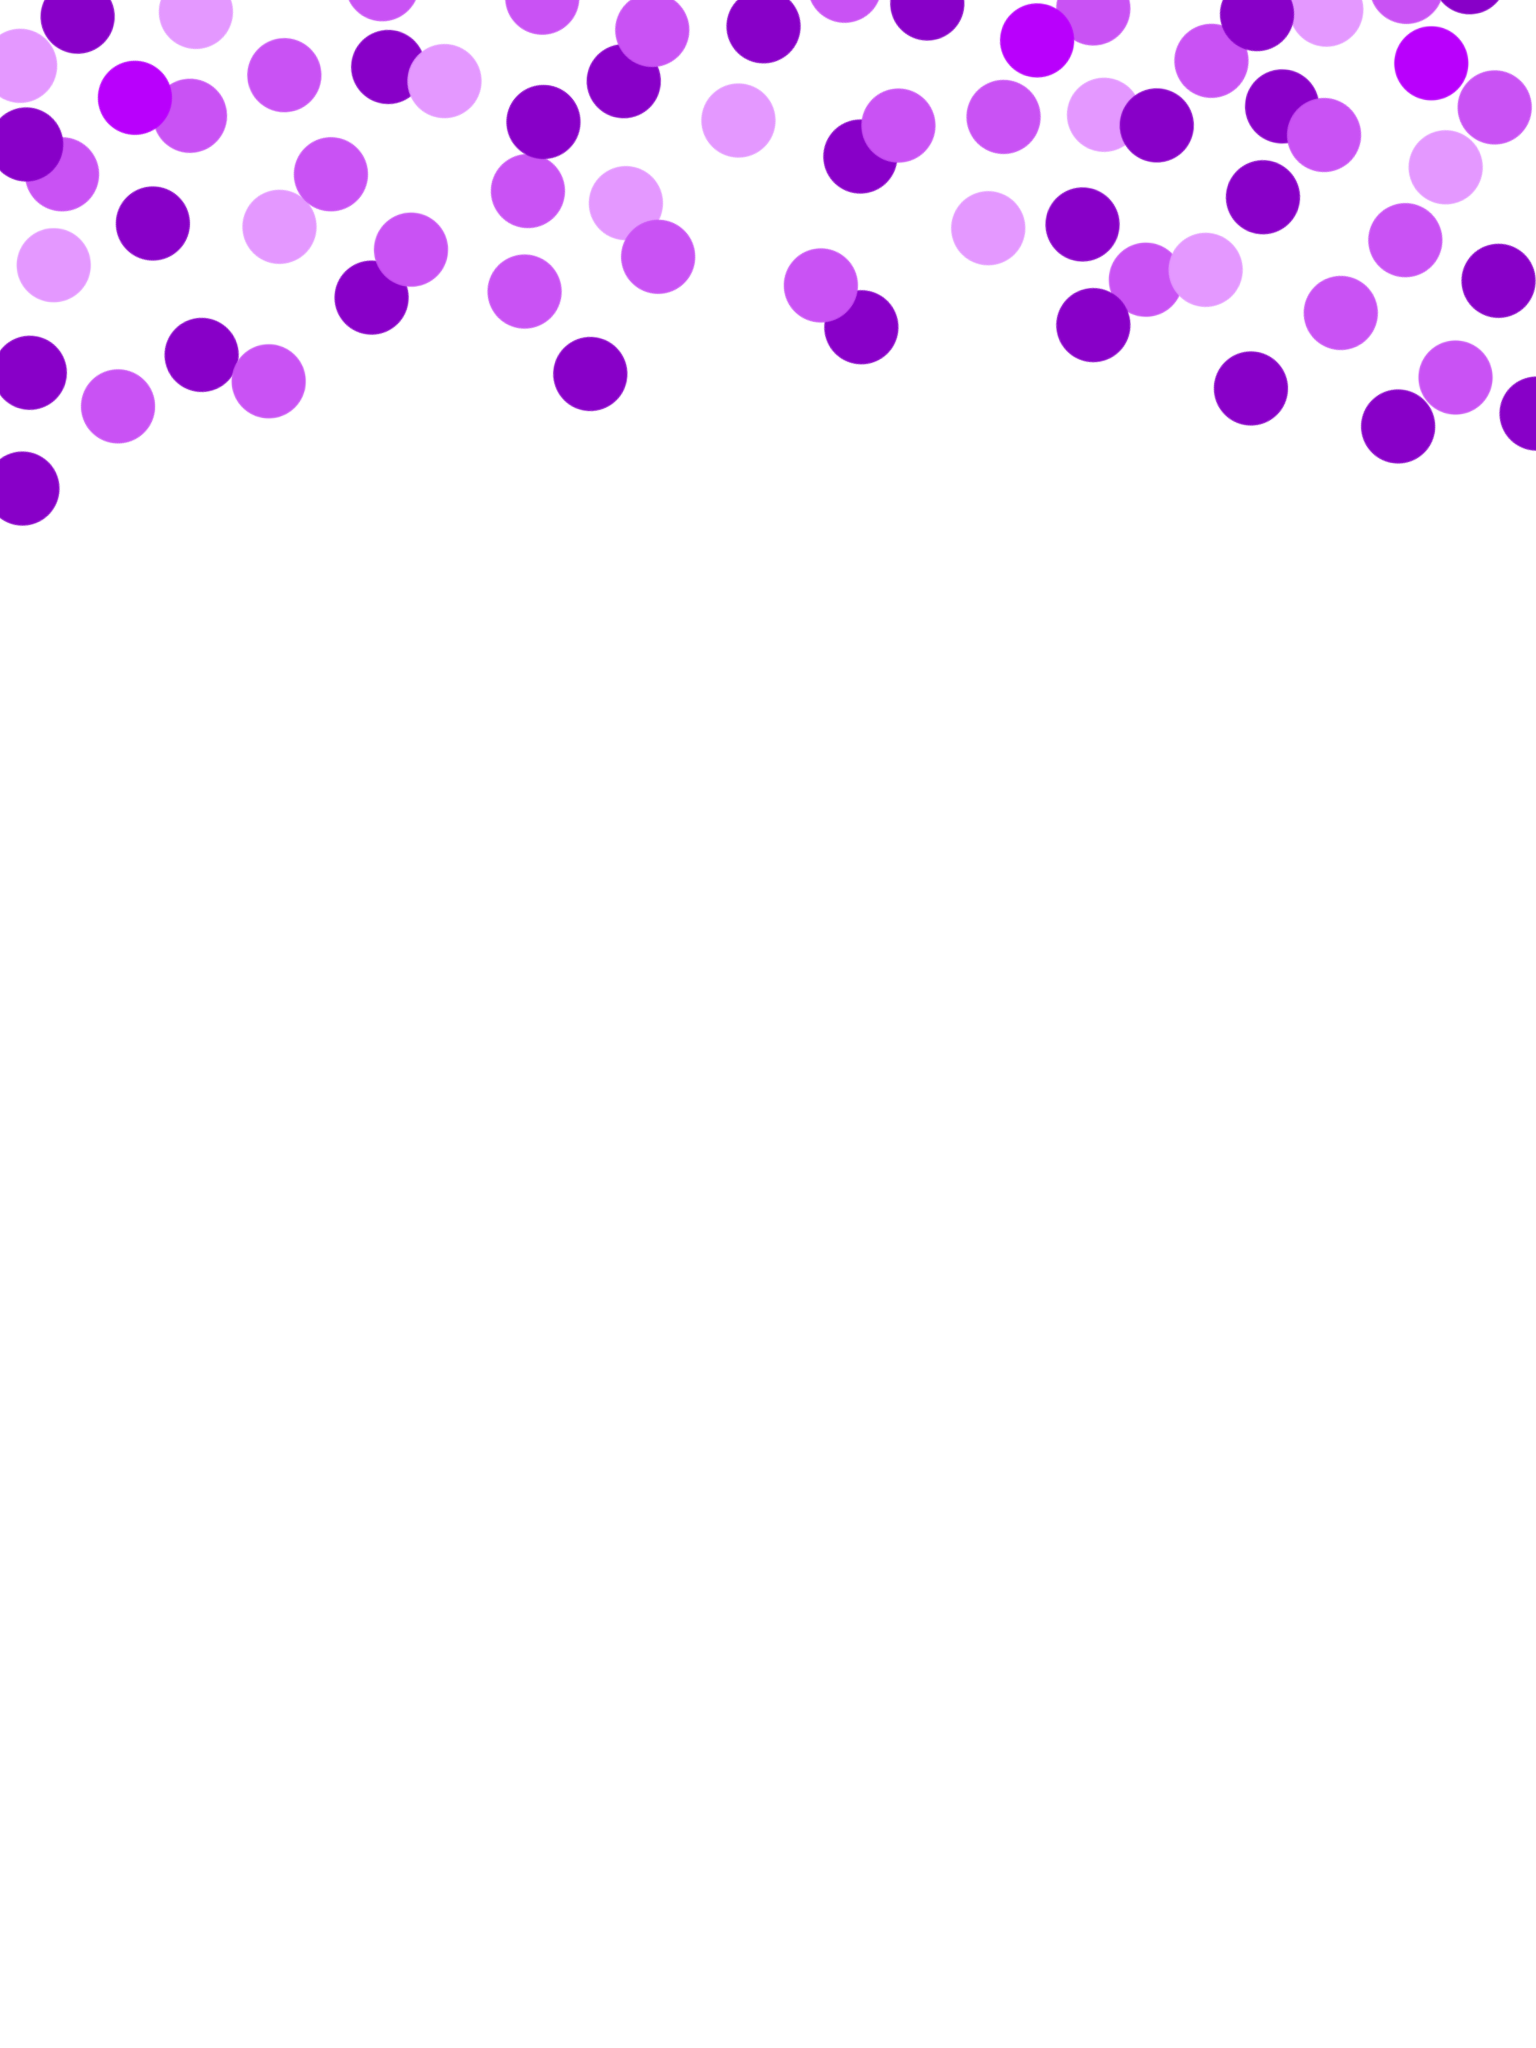 Confetti clipart purple, Confetti purple Transparent FREE for download